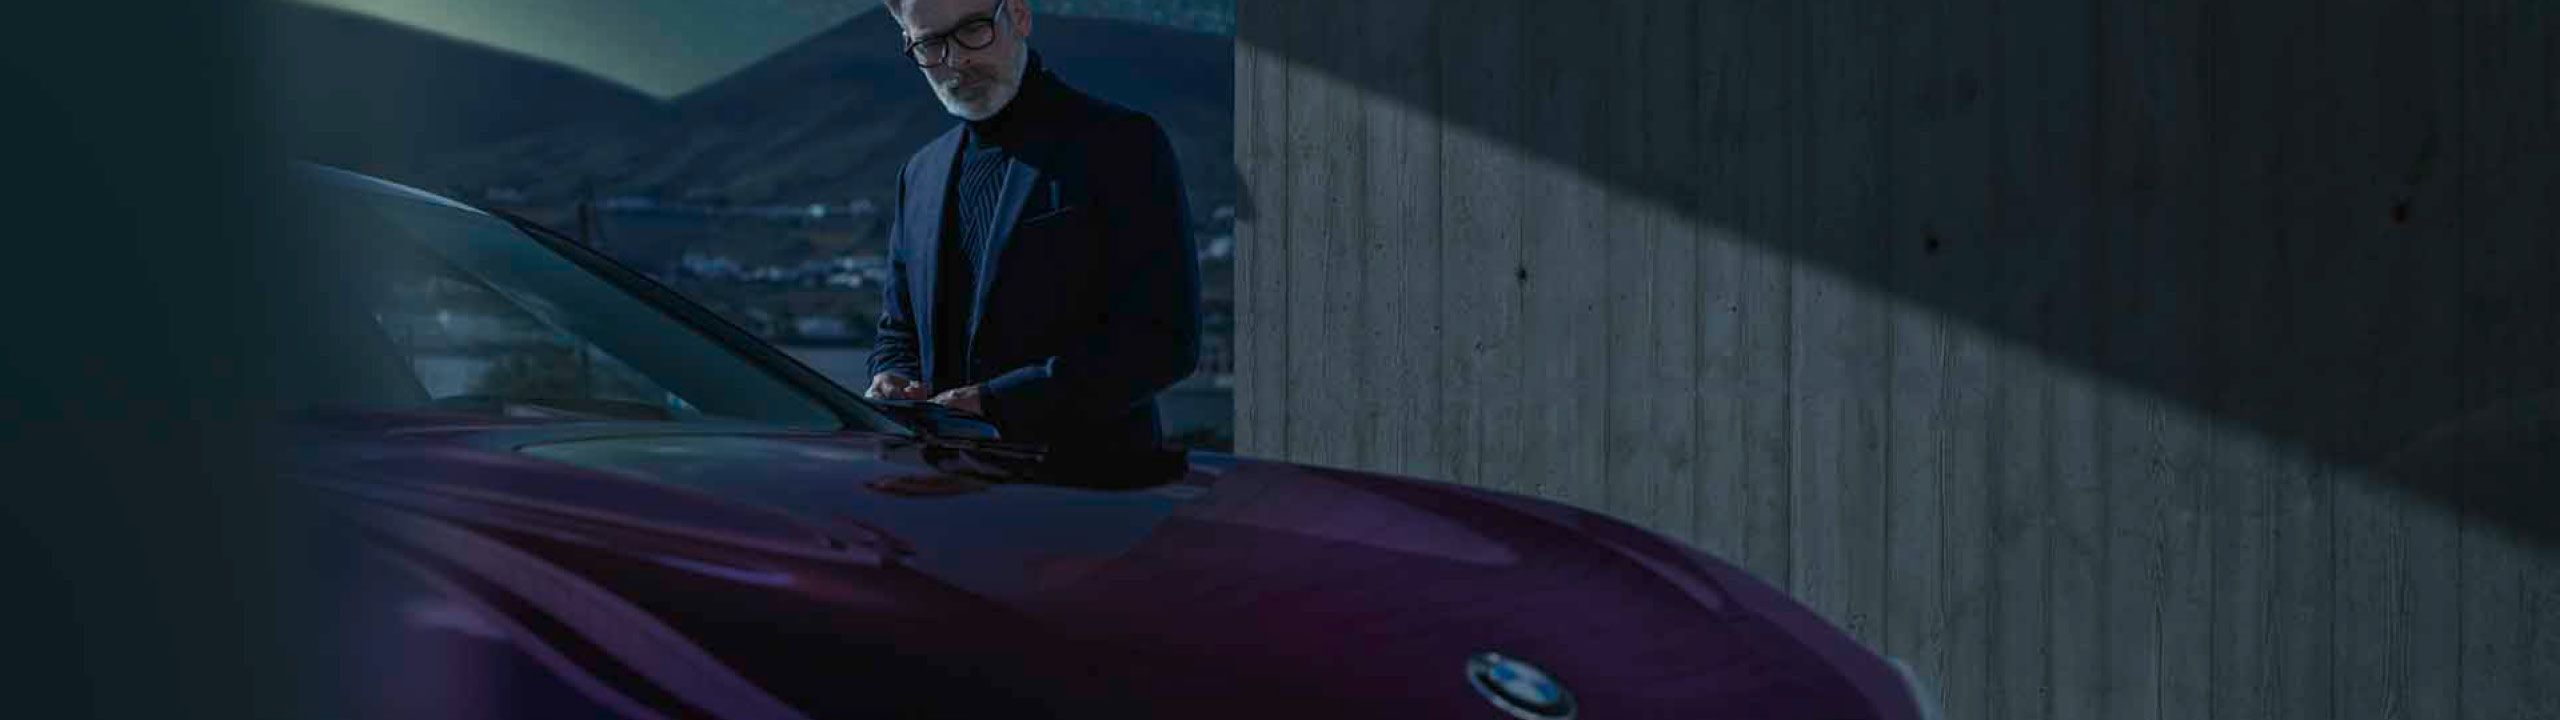 Gut gekleideter Mann mit weißem Bart steht in Dunkelheit neben lilafarbenen BMW 